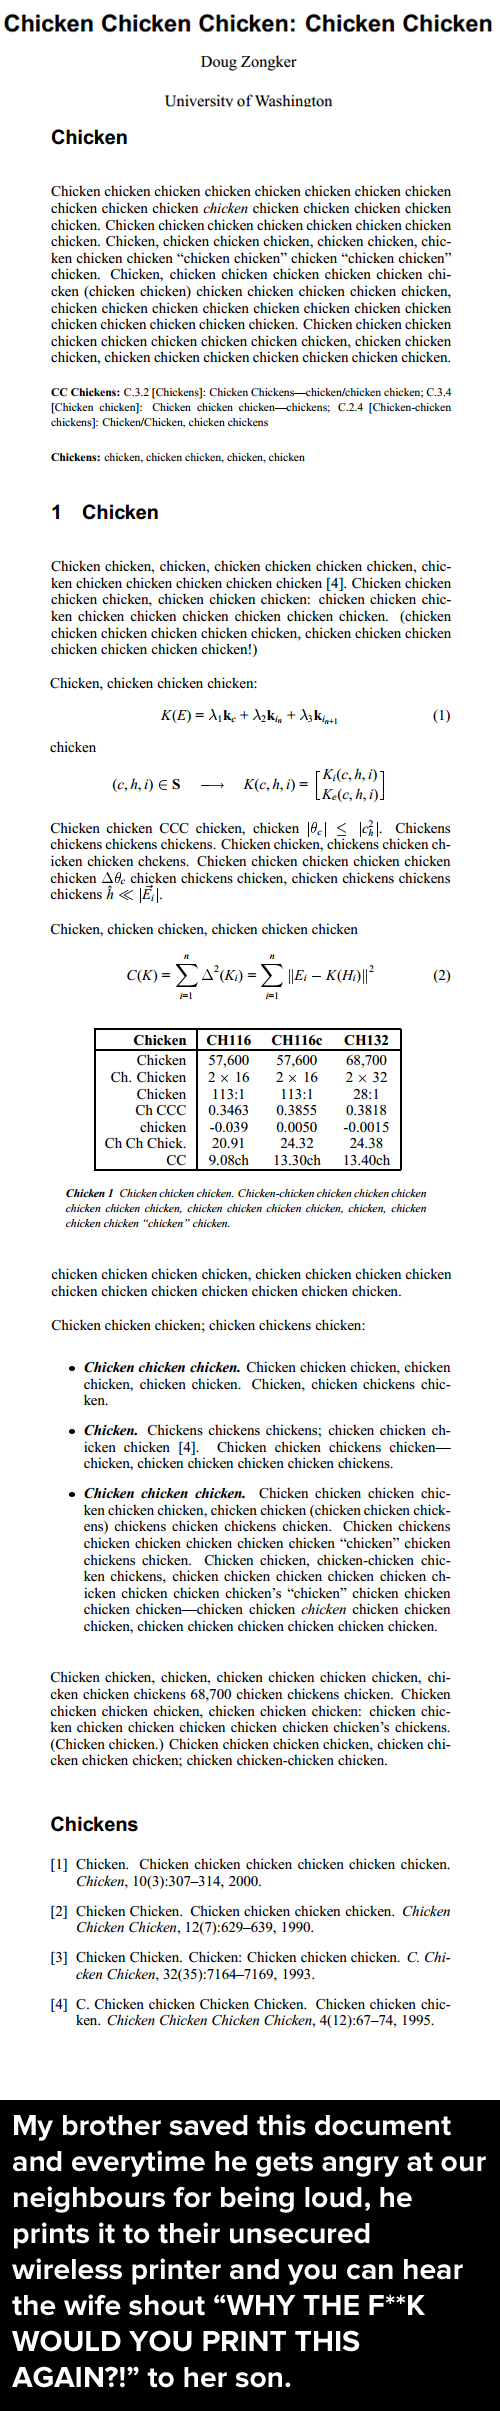 (Chicken Chicken)